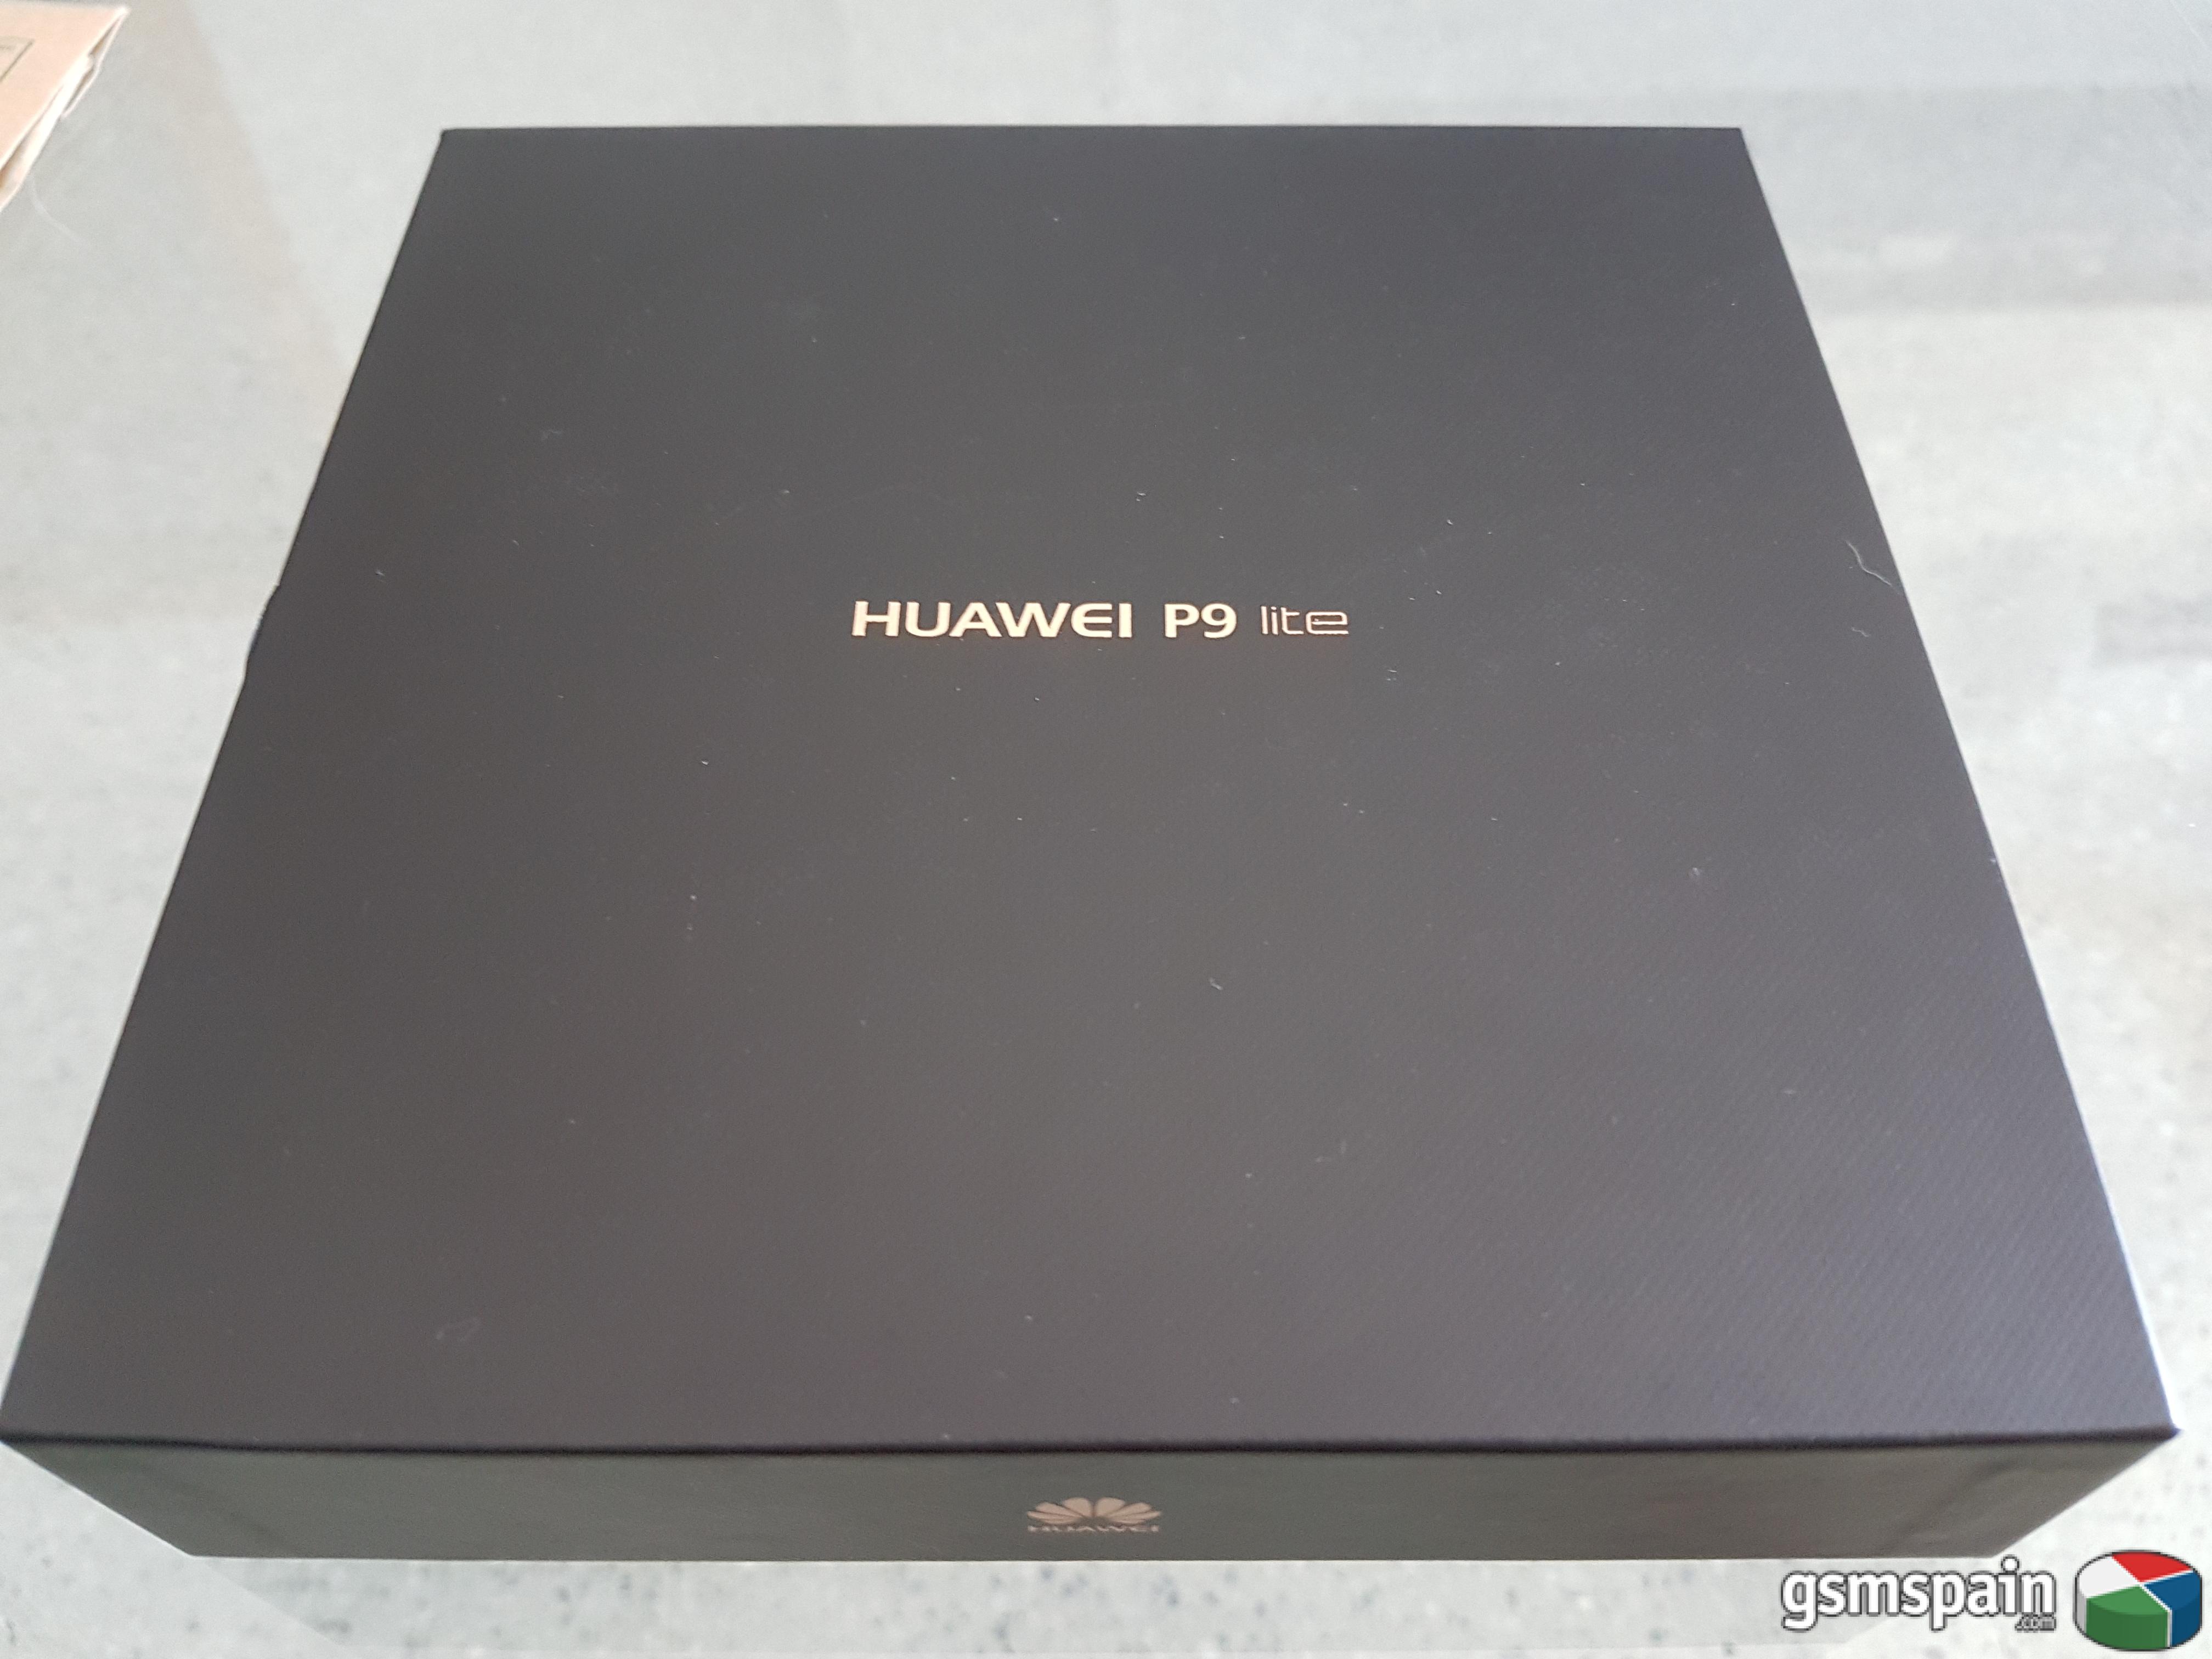 [VENDO] Huawei P9 lite blanco precintado